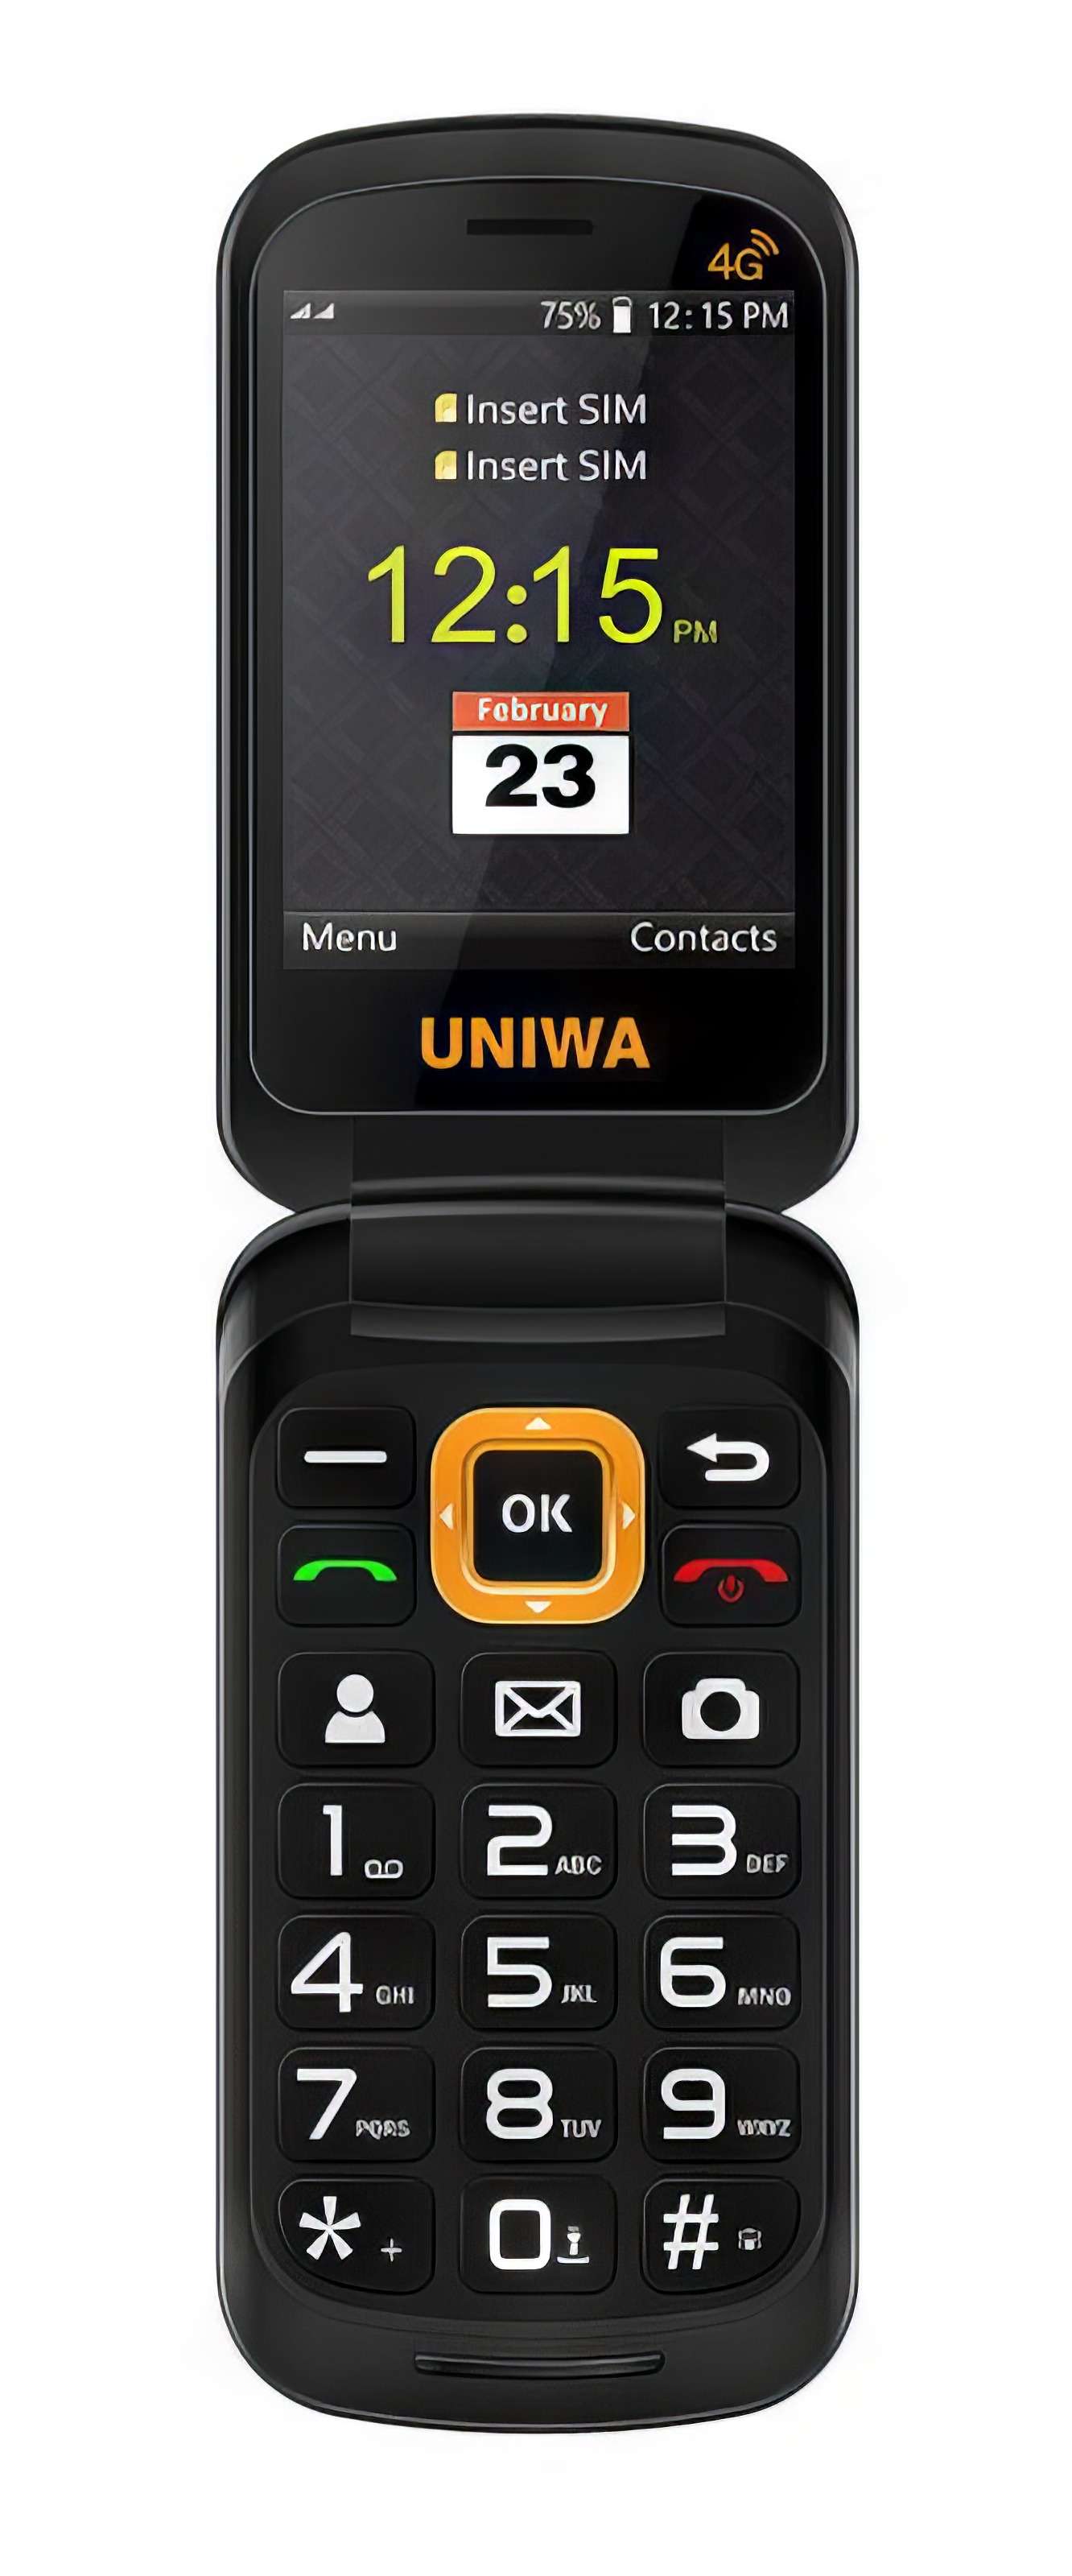 Мобильный телефон UNIWA V909T Flip Phone Gray ip телефон avaya 6402d01c gray 100114623